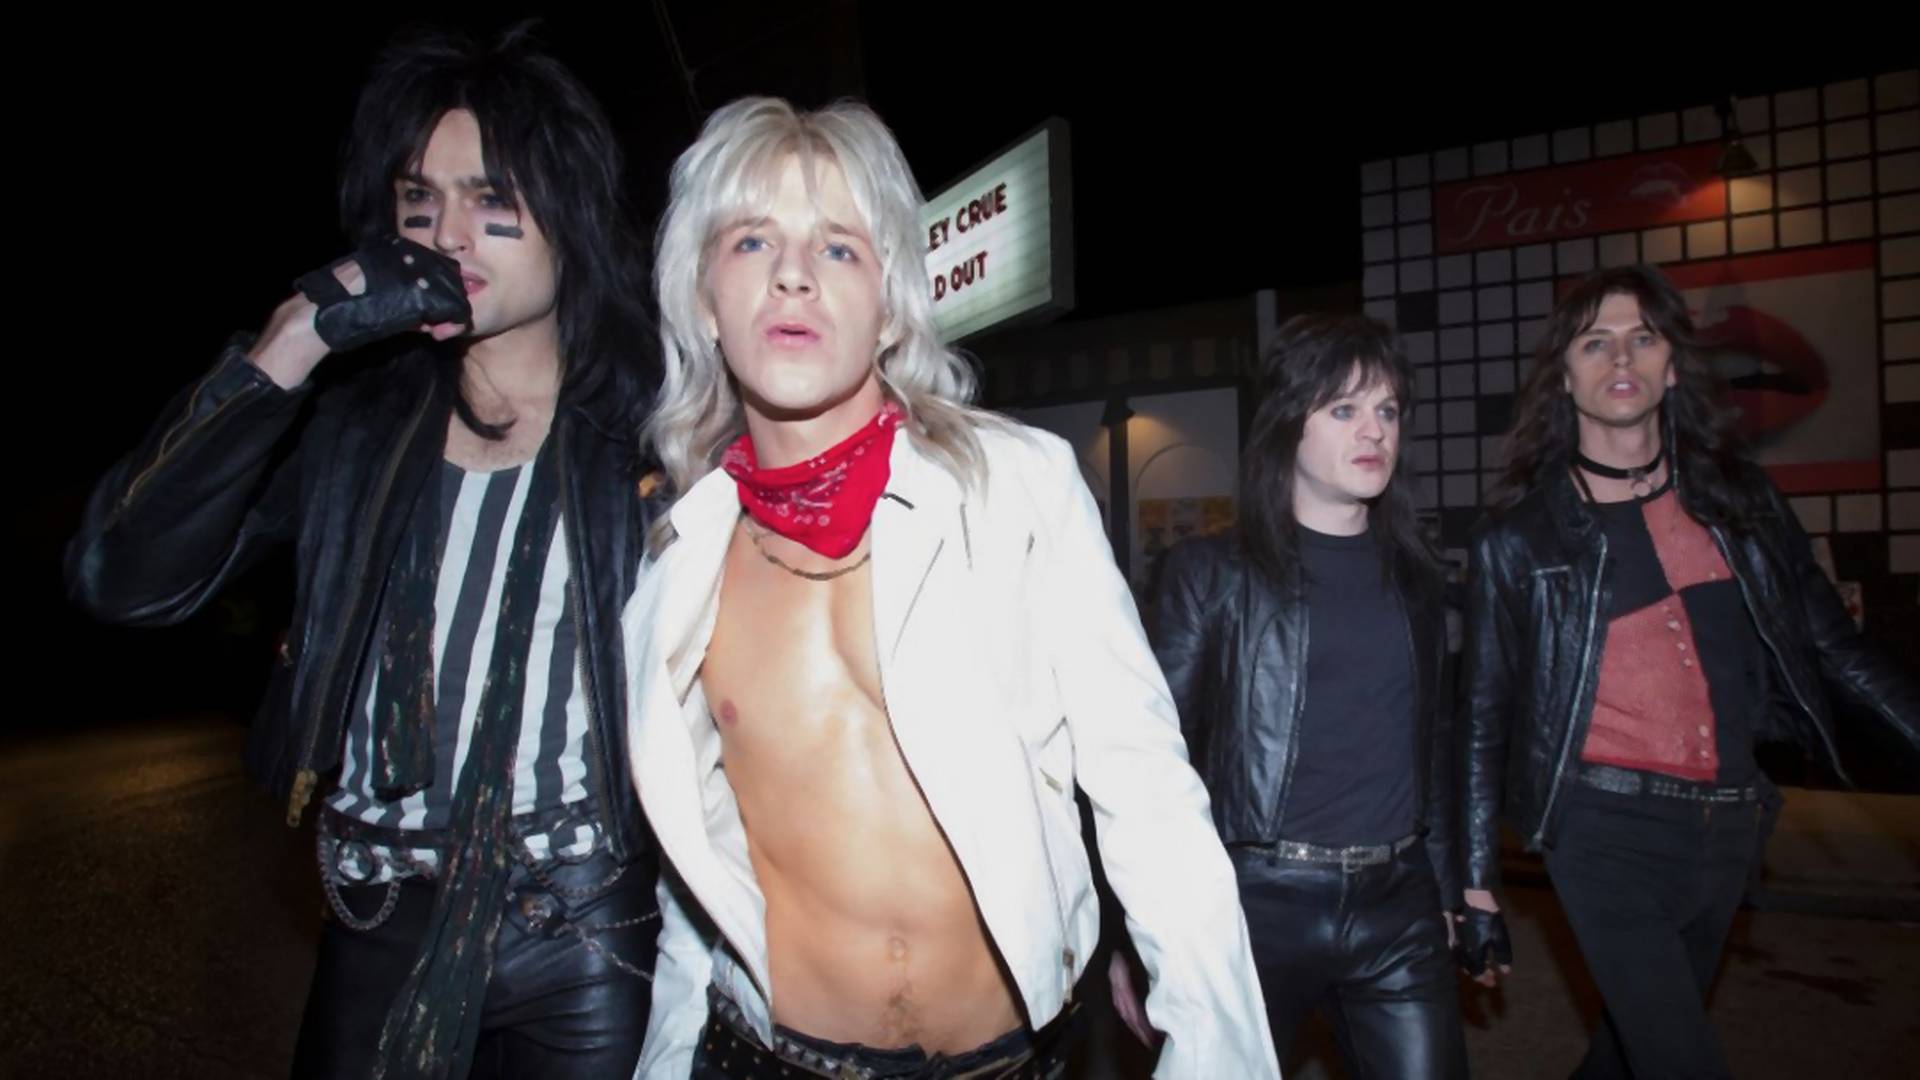 Hudobná dráma o rockeroch Mötley Crüe je divokou jazdou plnou drog a sexu, no nečakaj nič viac